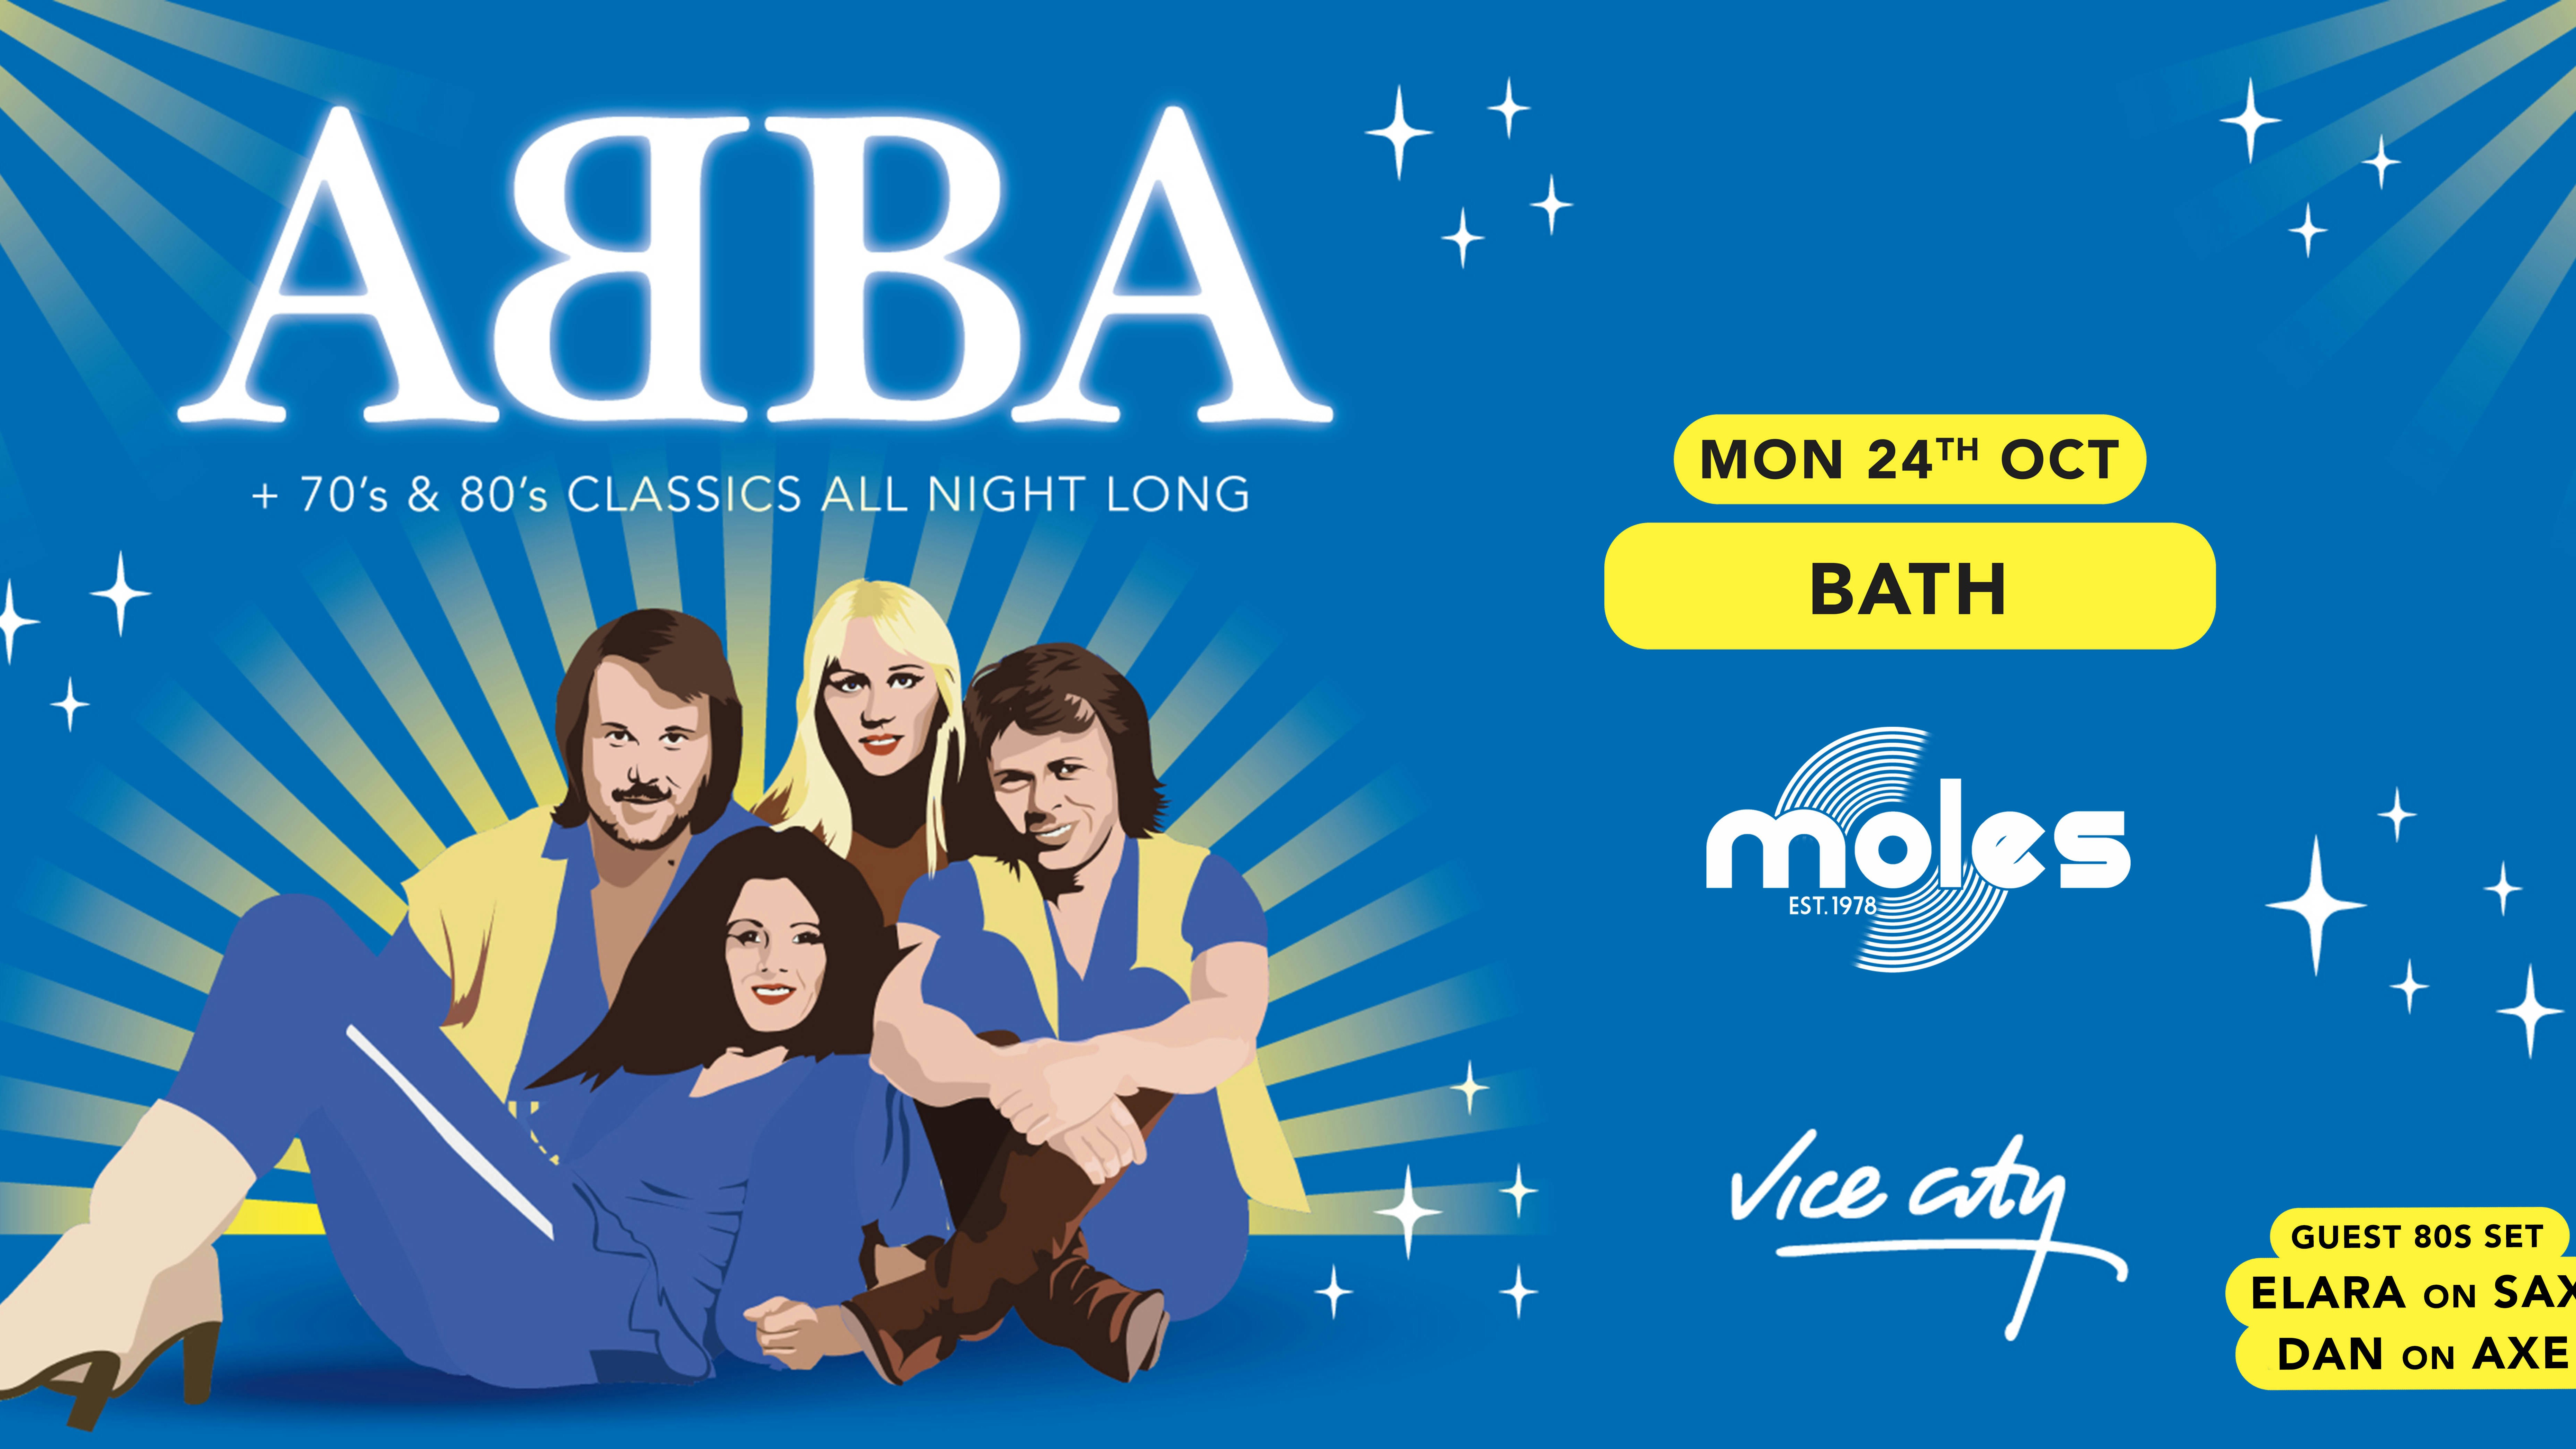 ABBA Night – Bath